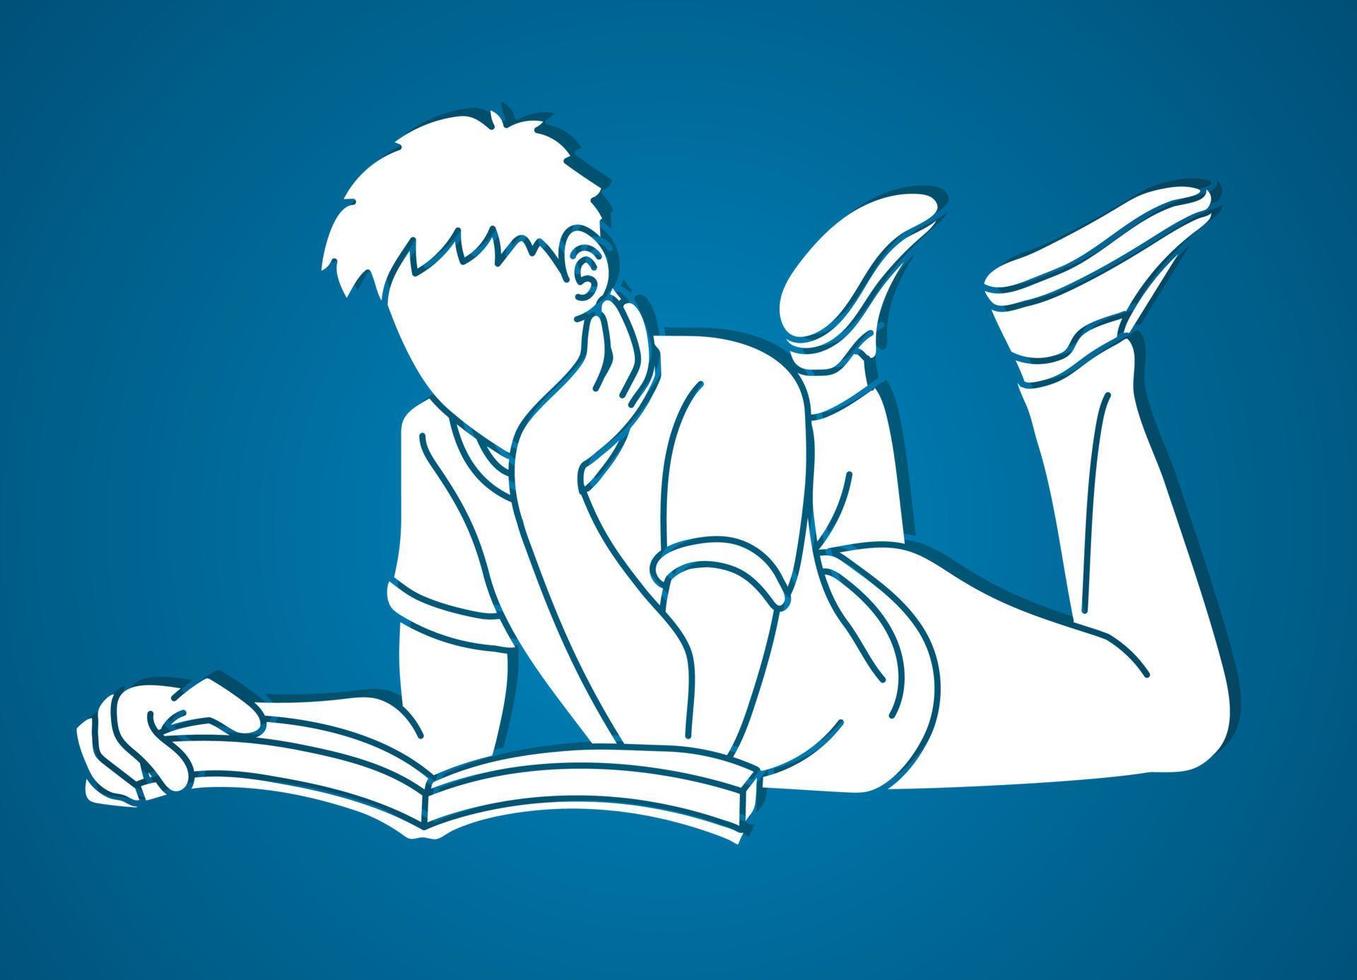 silueta masculina leyendo un libro vector